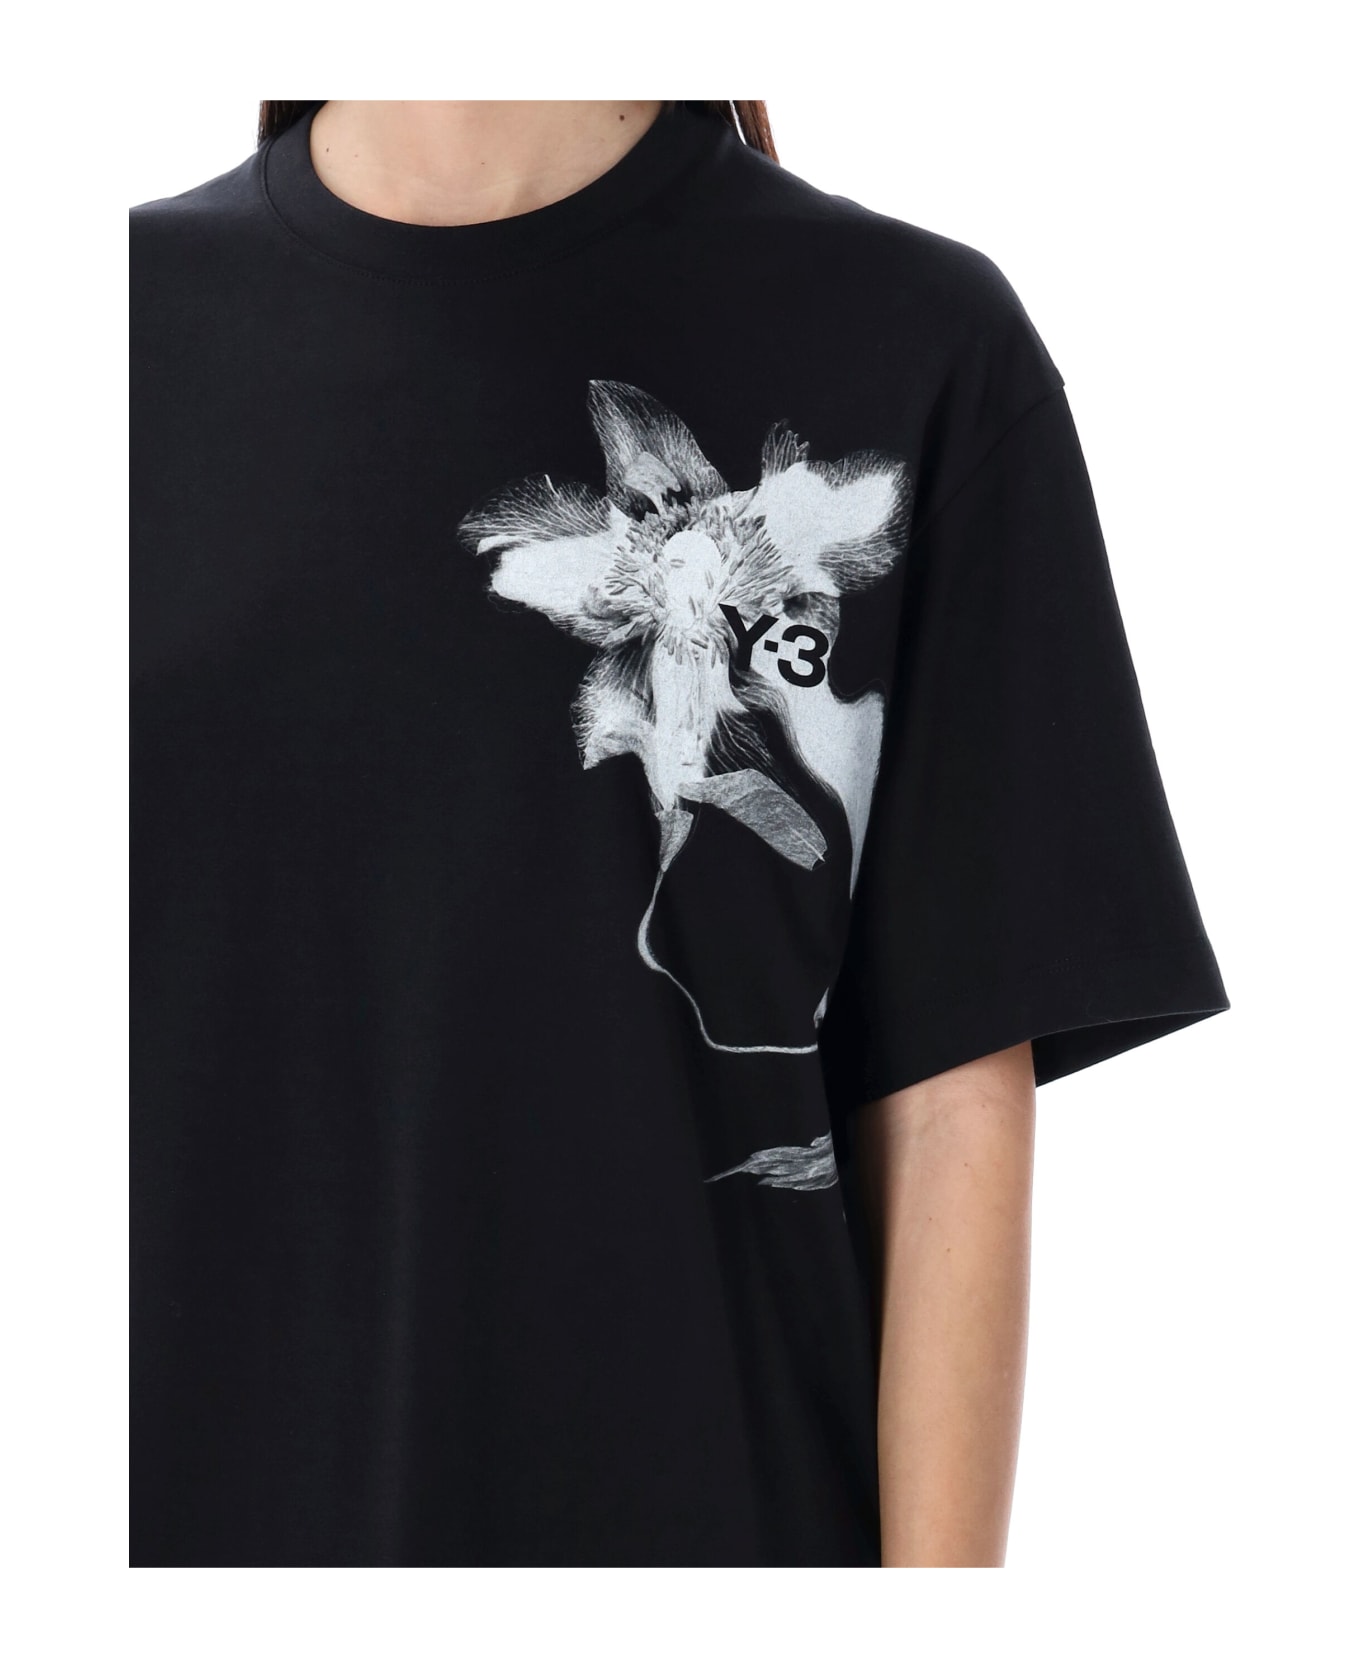 Y-3 Graphic Print T-shirt - BLACK